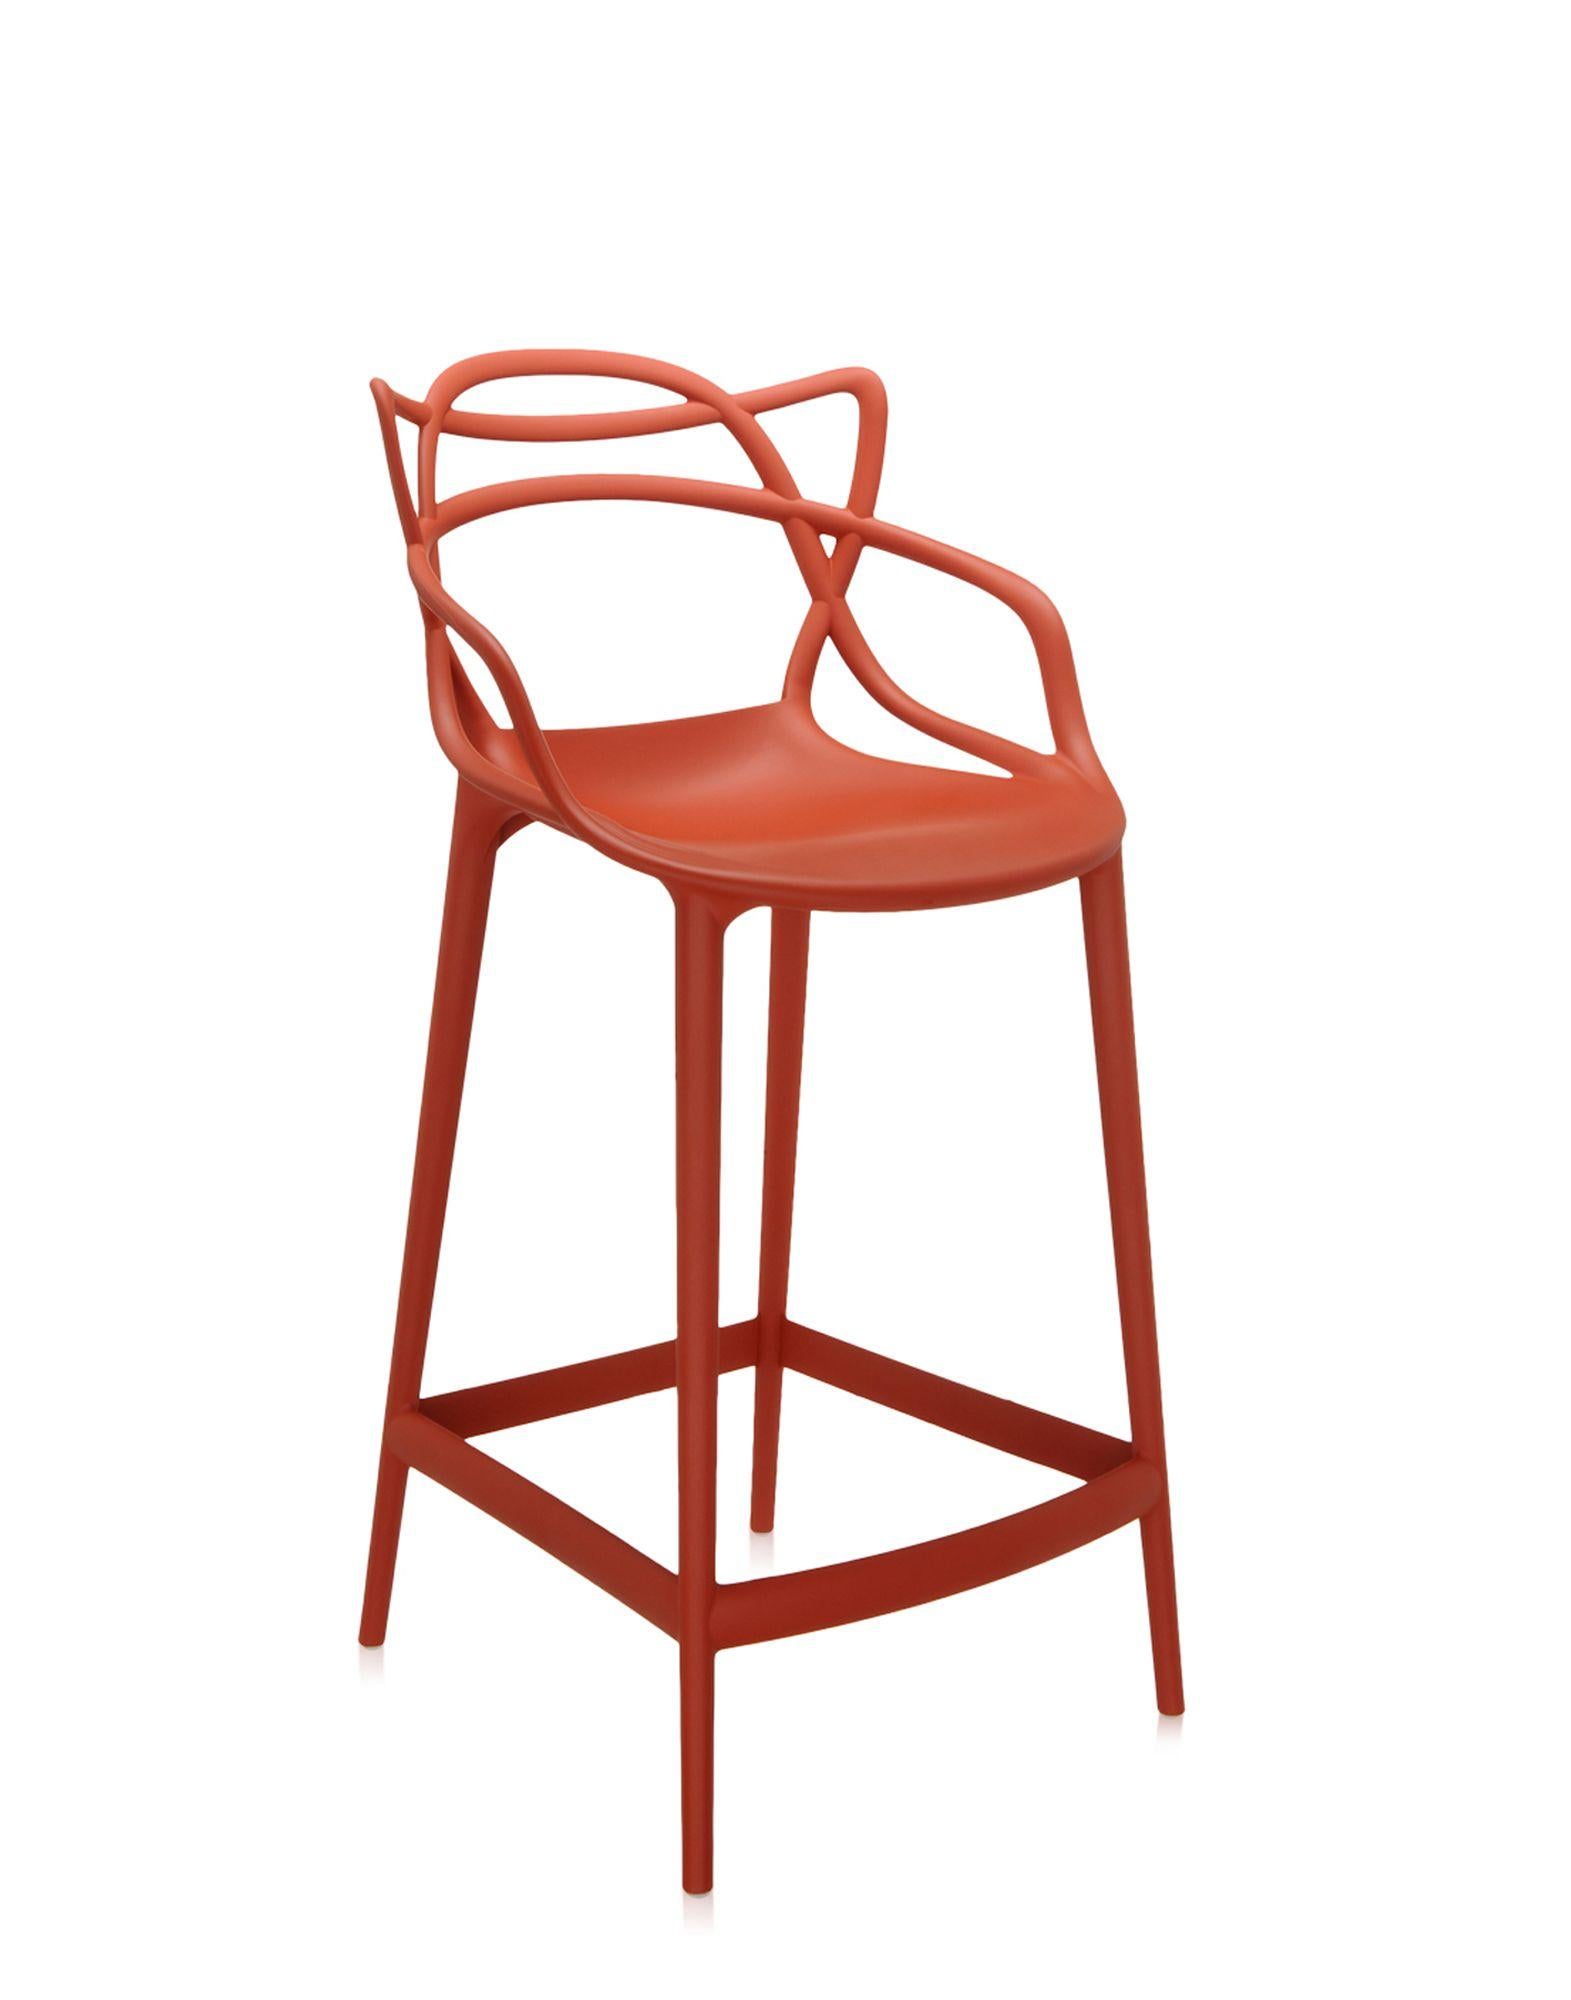 Kartell bietet auch eine Hockerversion des Masters Stuhls an, der mit dem Good Design Award 2010 und dem Red Dot Award 2013 ausgezeichnet wurde und weltweit ein Bestseller ist. Die Beine sind verlängert und die Sitzfläche geschrumpft, aber der